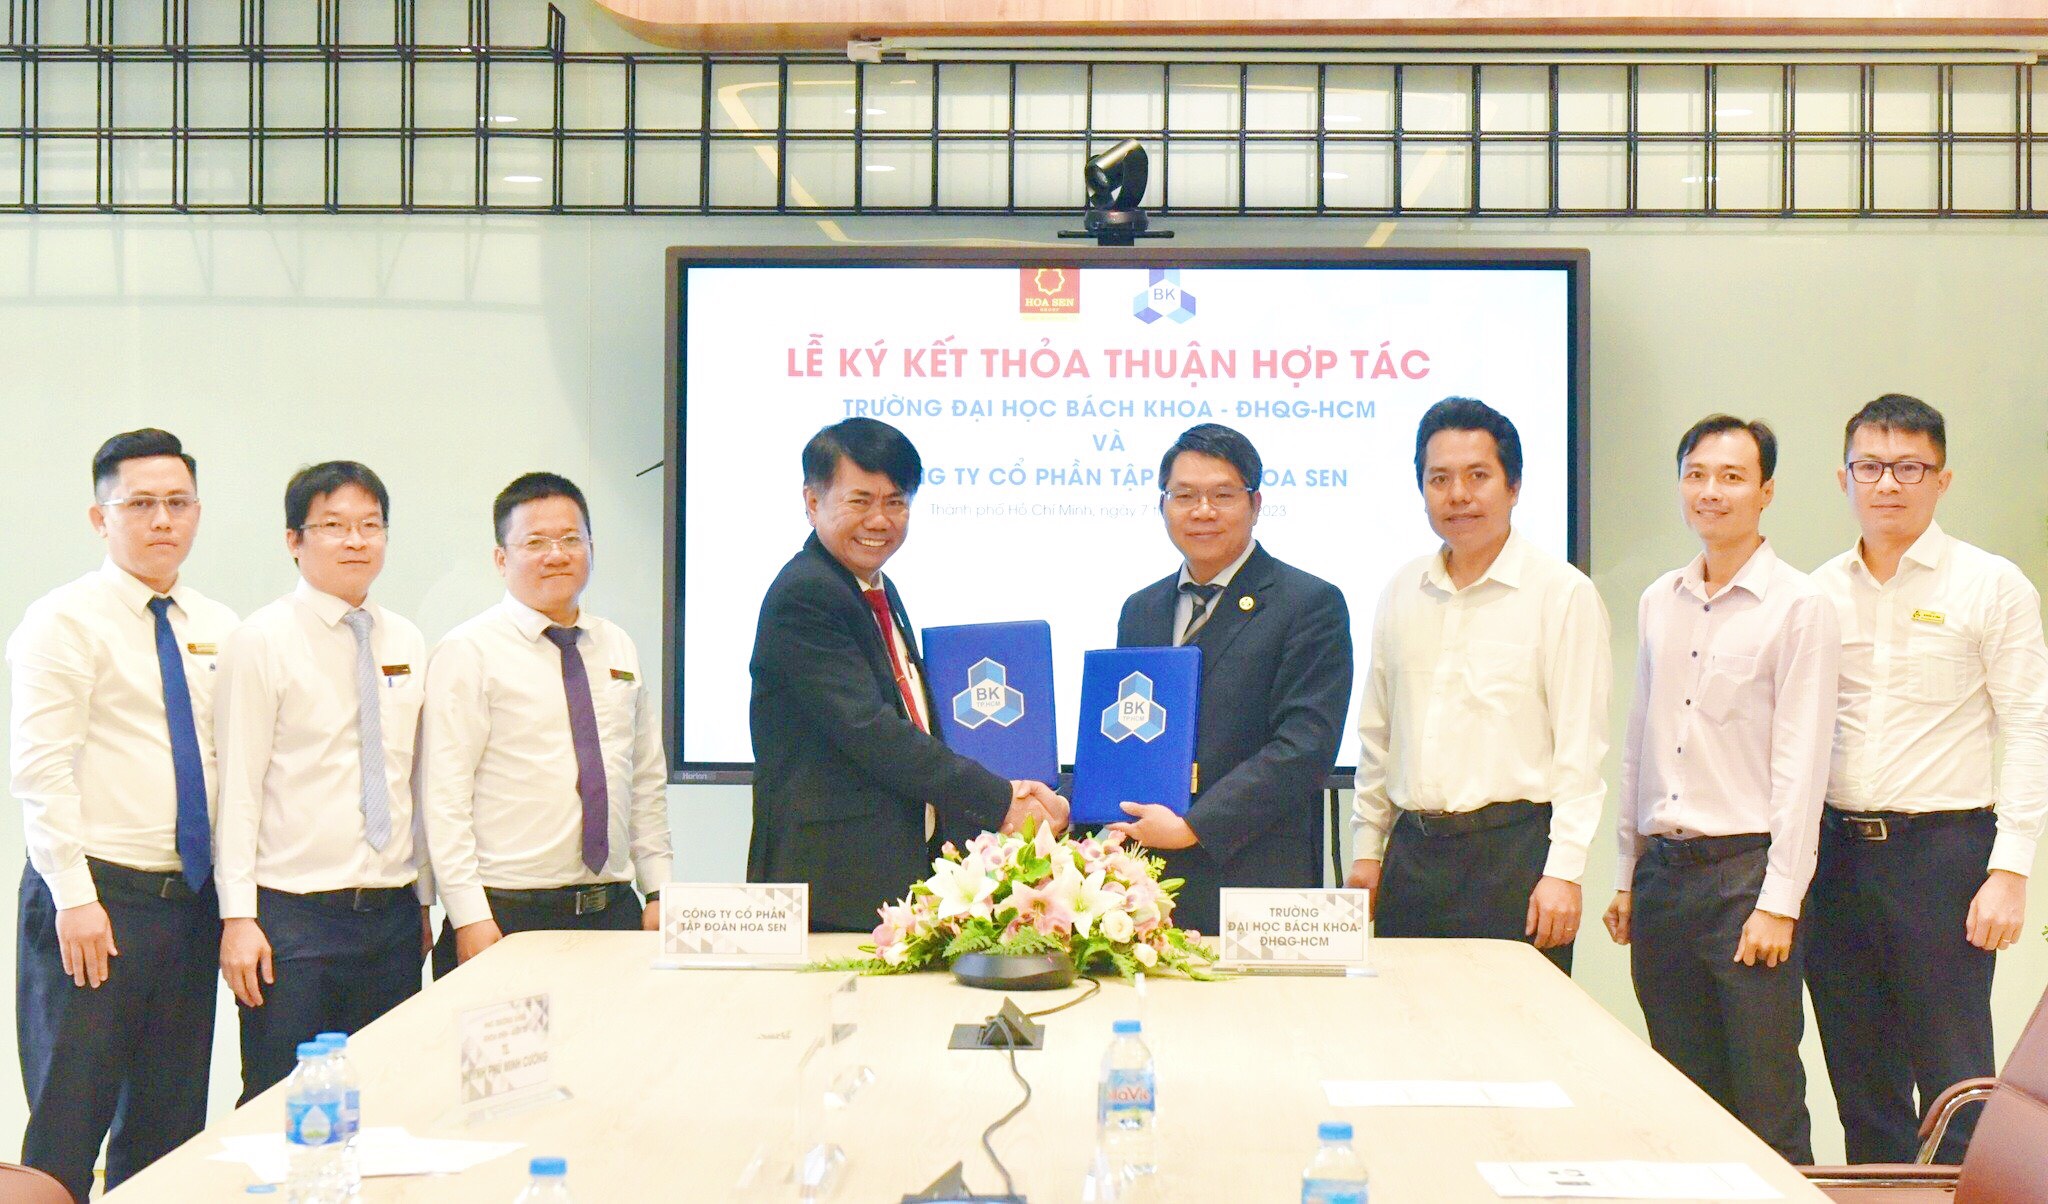 Tập đoàn Hoa Sen ký kết thỏa thuận hợp tác với Trường Đại học Bách Khoa, ĐHQG - HCM